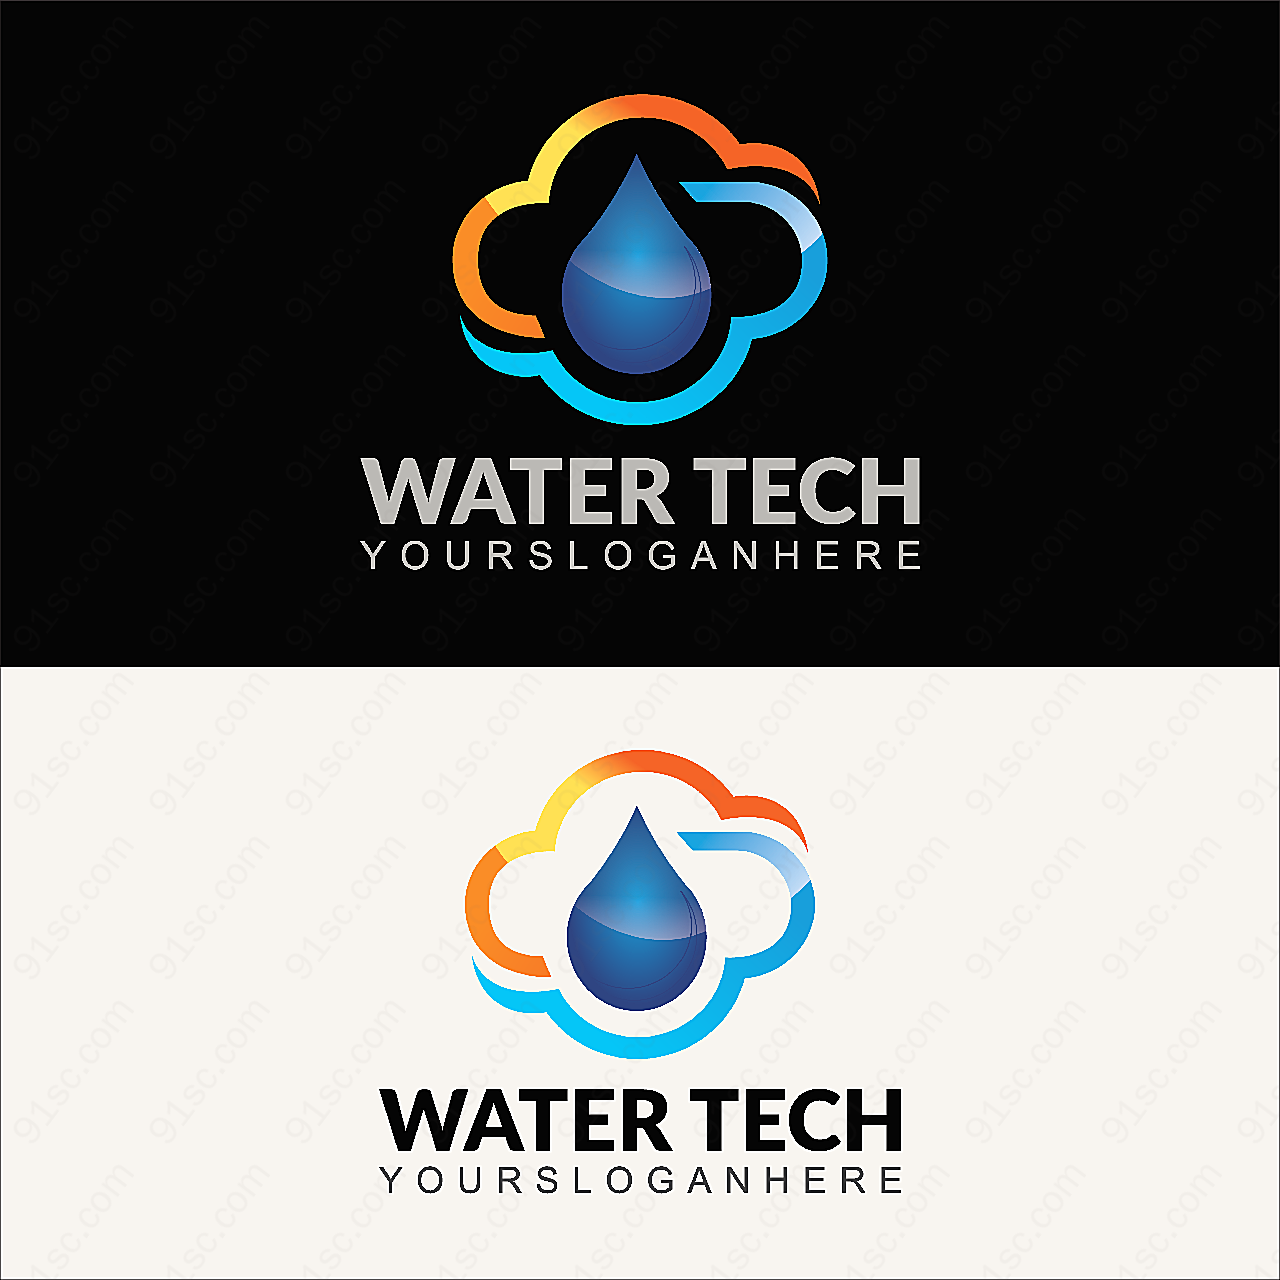 水滴标志设计矢量logo图形